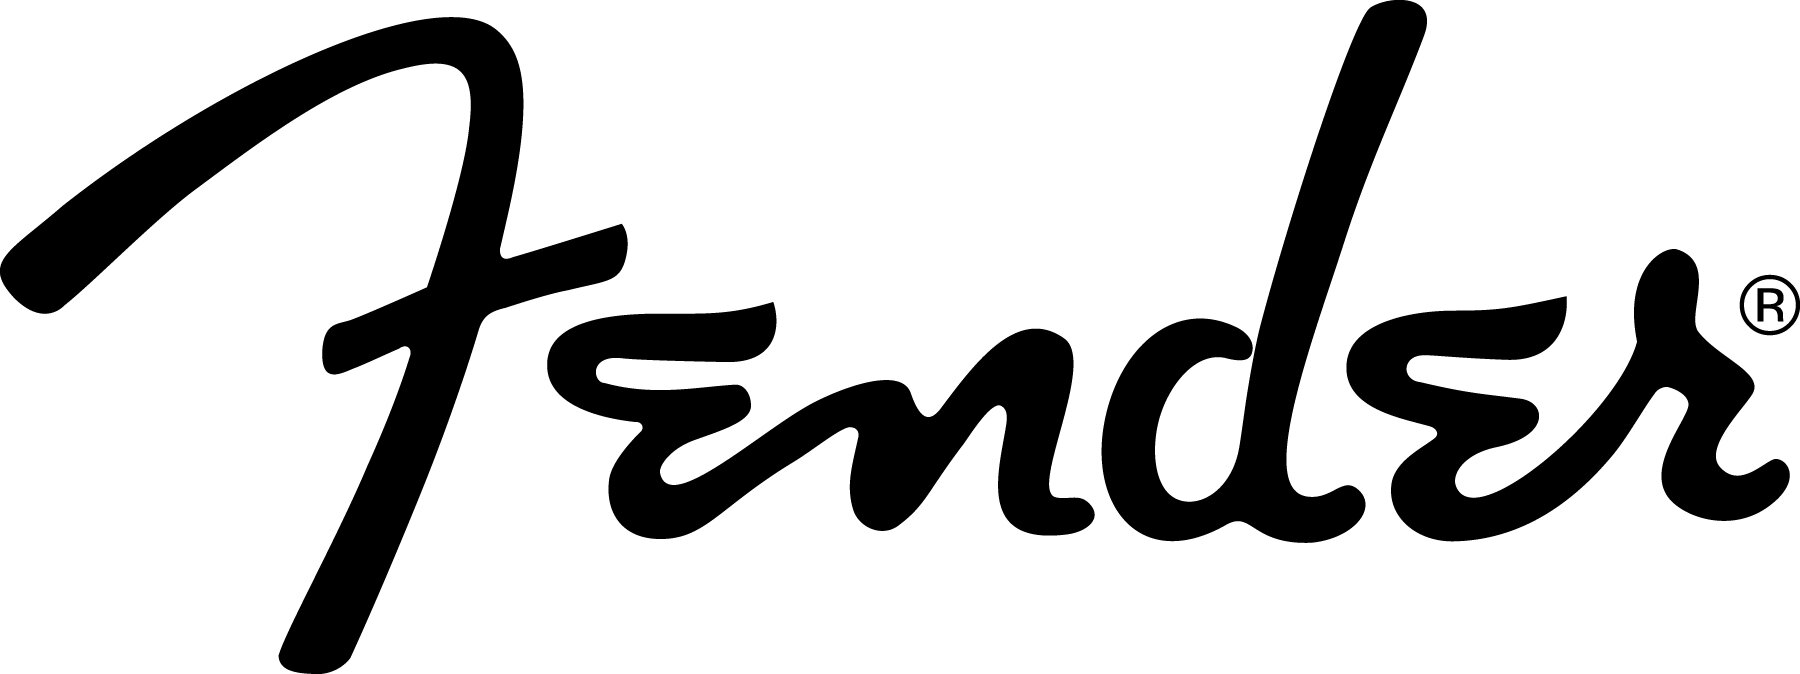 Logo_Fender_Black.jpg